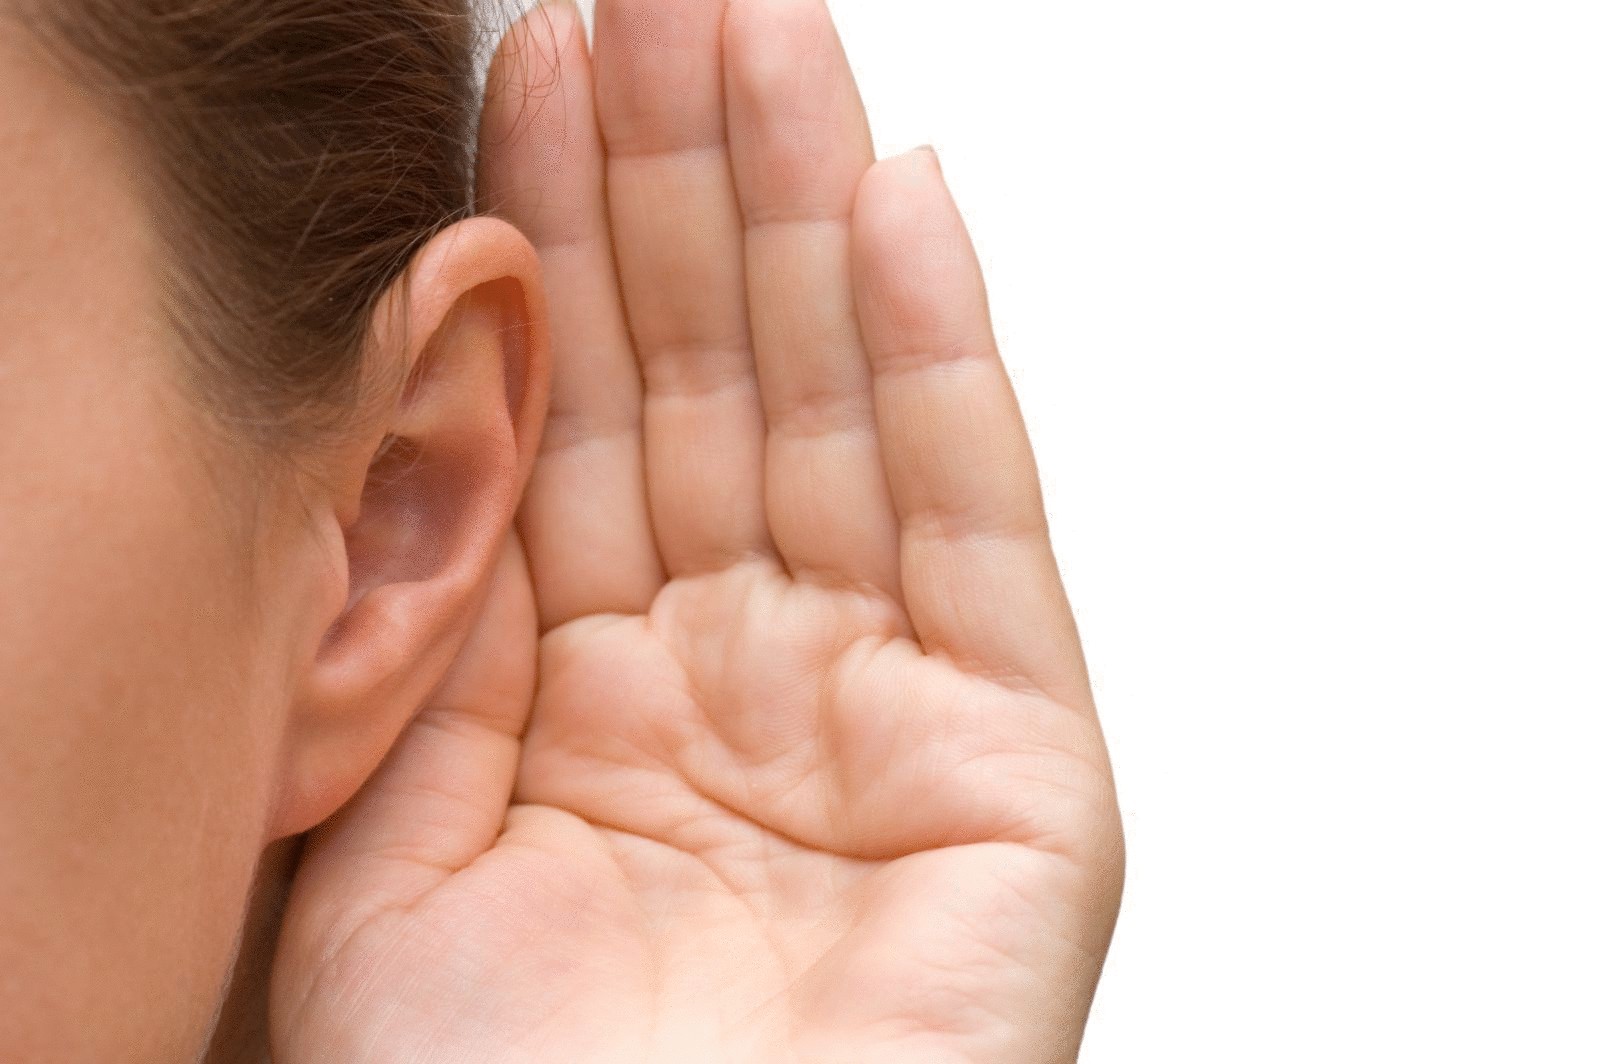 Самые эффективные способы улучшения слуха